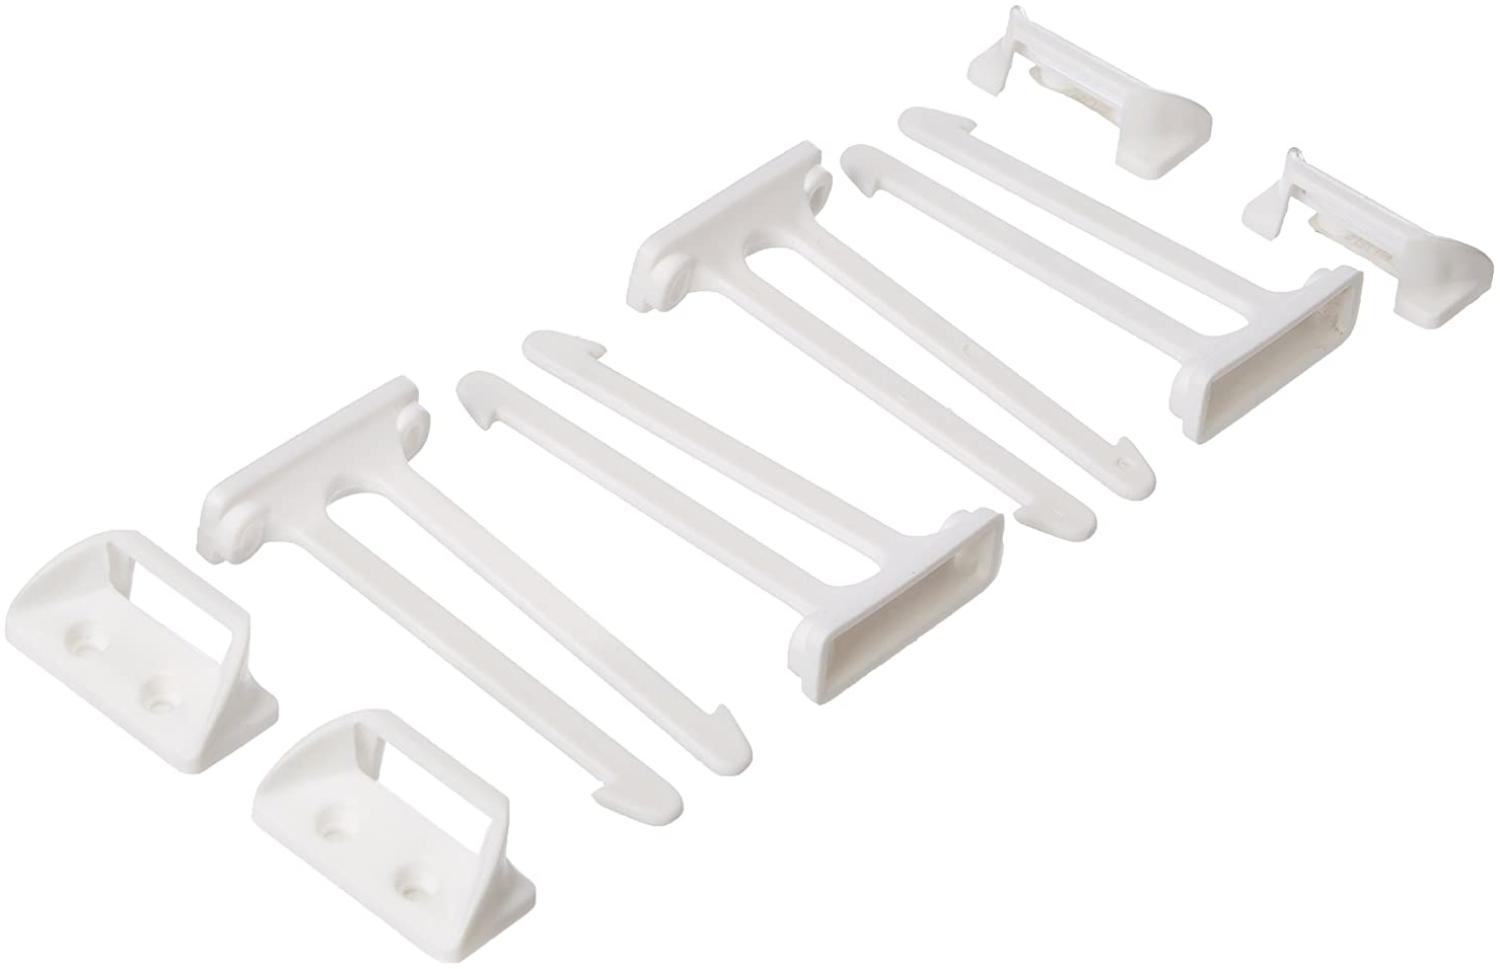 ABUS Schubladen-Sicherung Sina Sicherung für Türen, Schränke und Schubladen - einfache Montage - 1 Stück - weiß - 76973 Bild 1